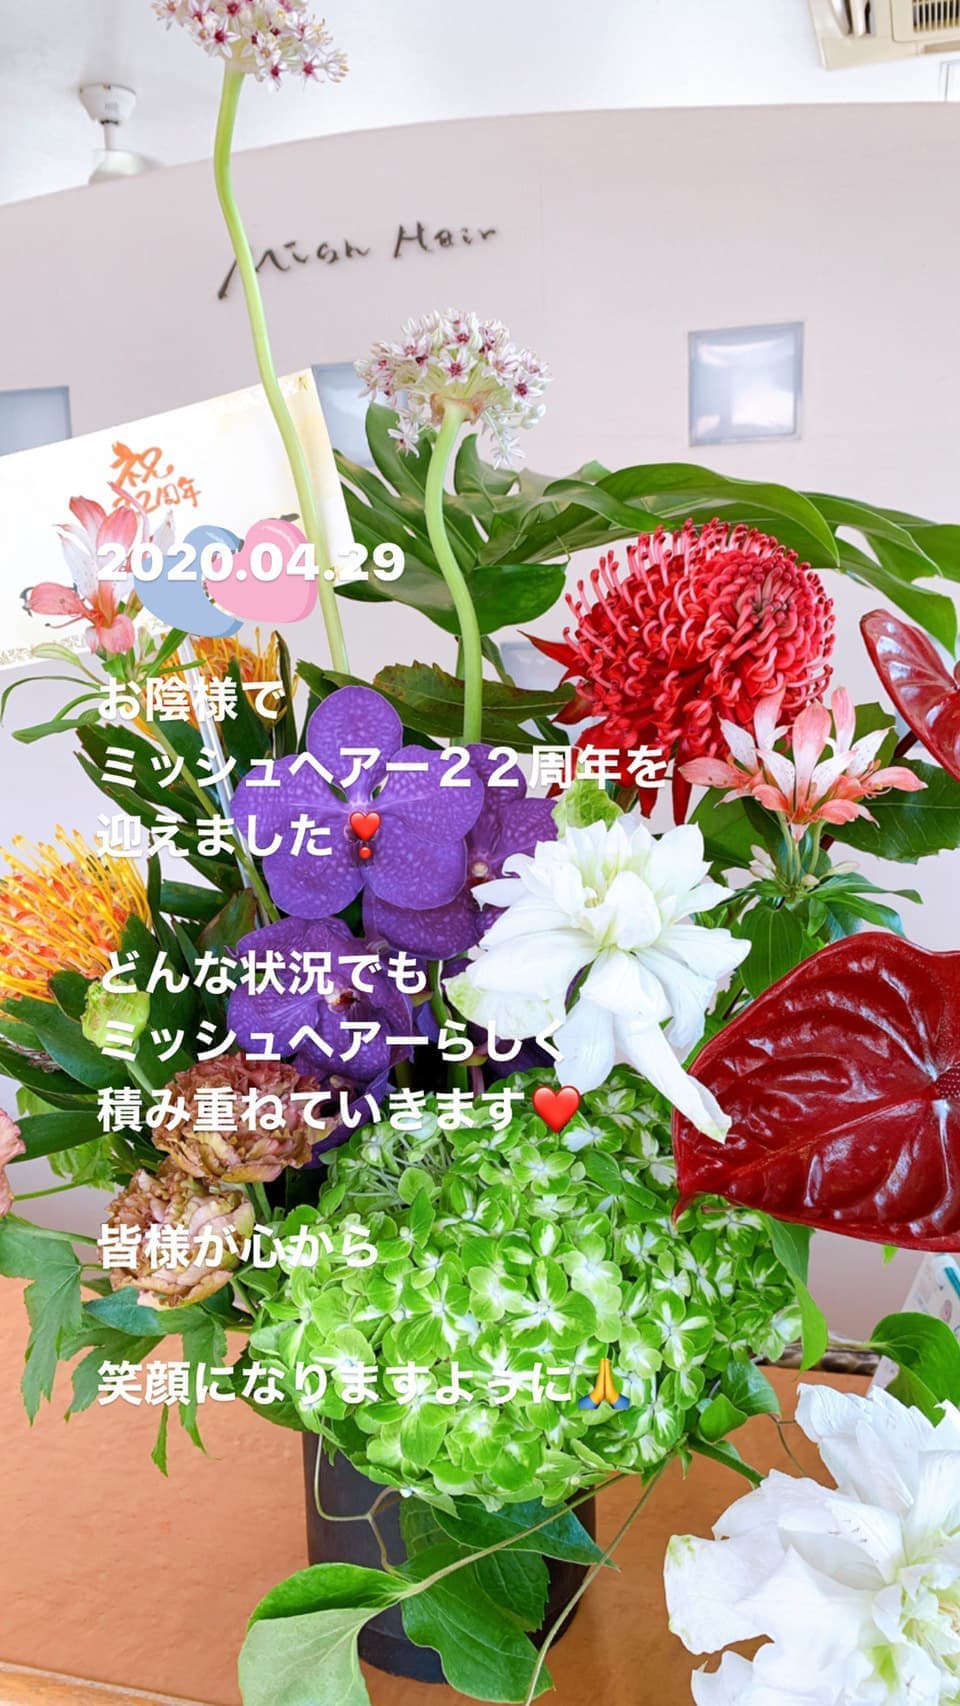 富士市美容室ミッシュヘアーの2020年5月7日のお知らせのお花のイメージ画像